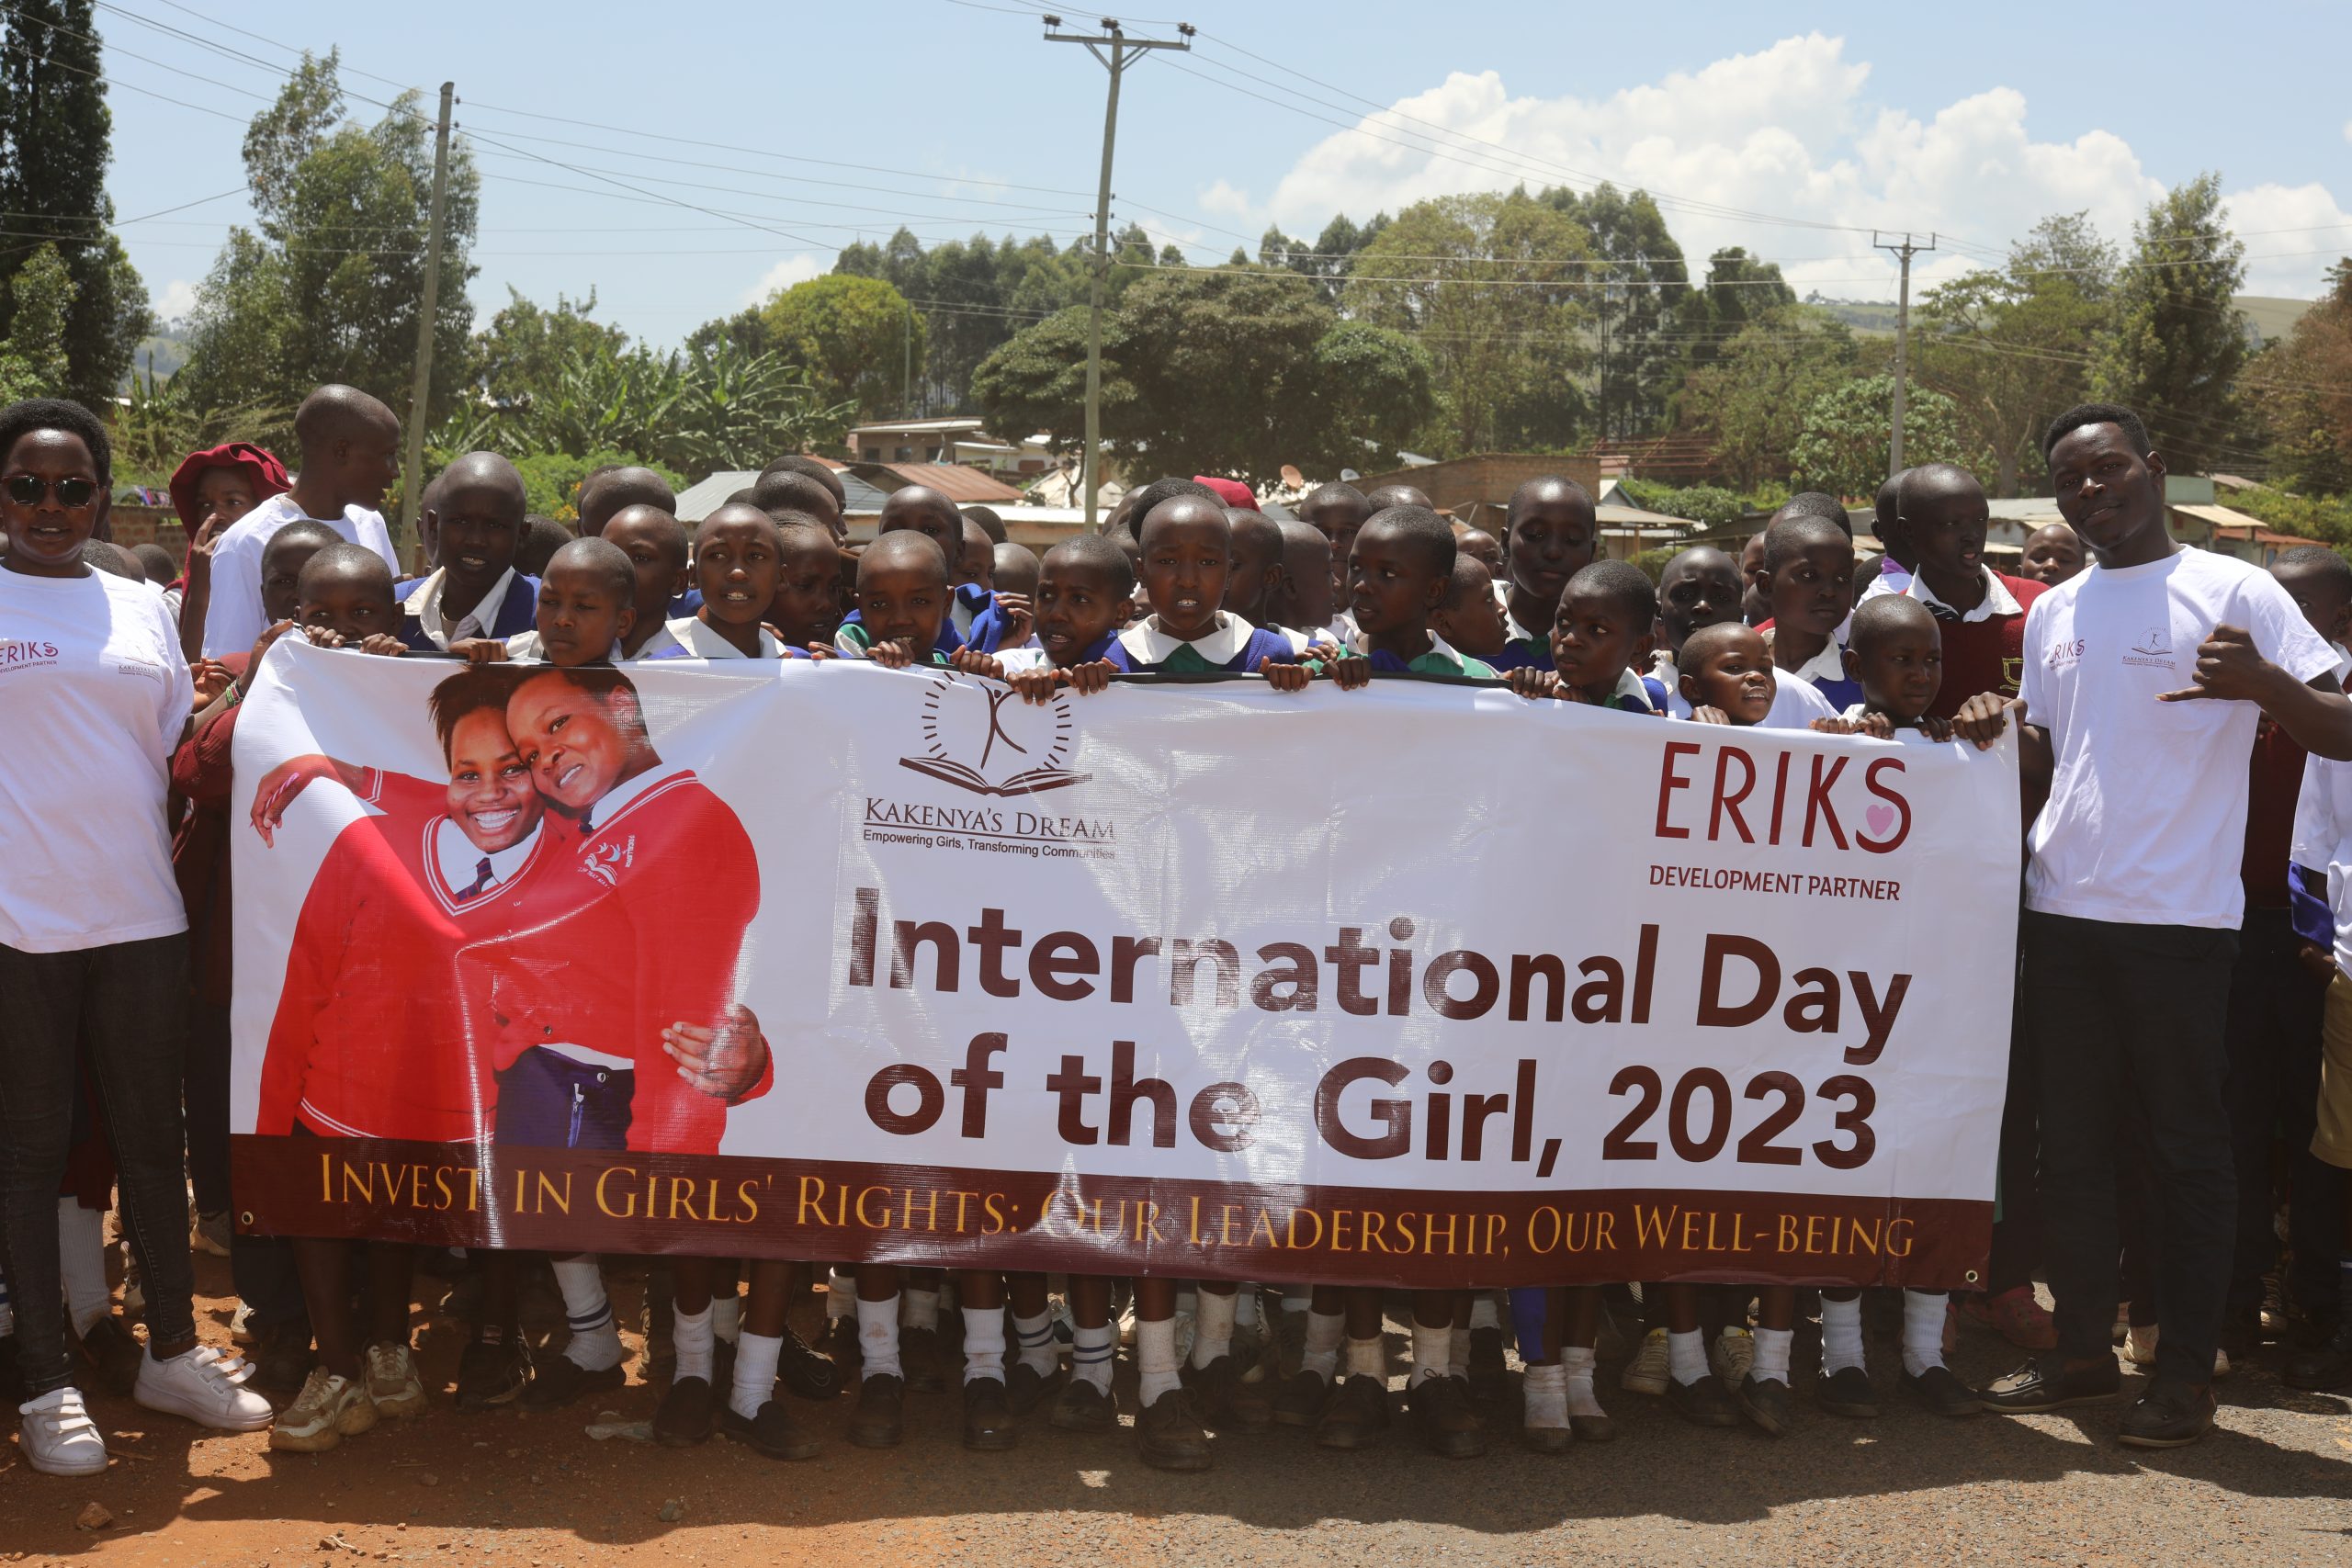 Kakenya’s Dream Joins The World in Marking International Day of The Girl